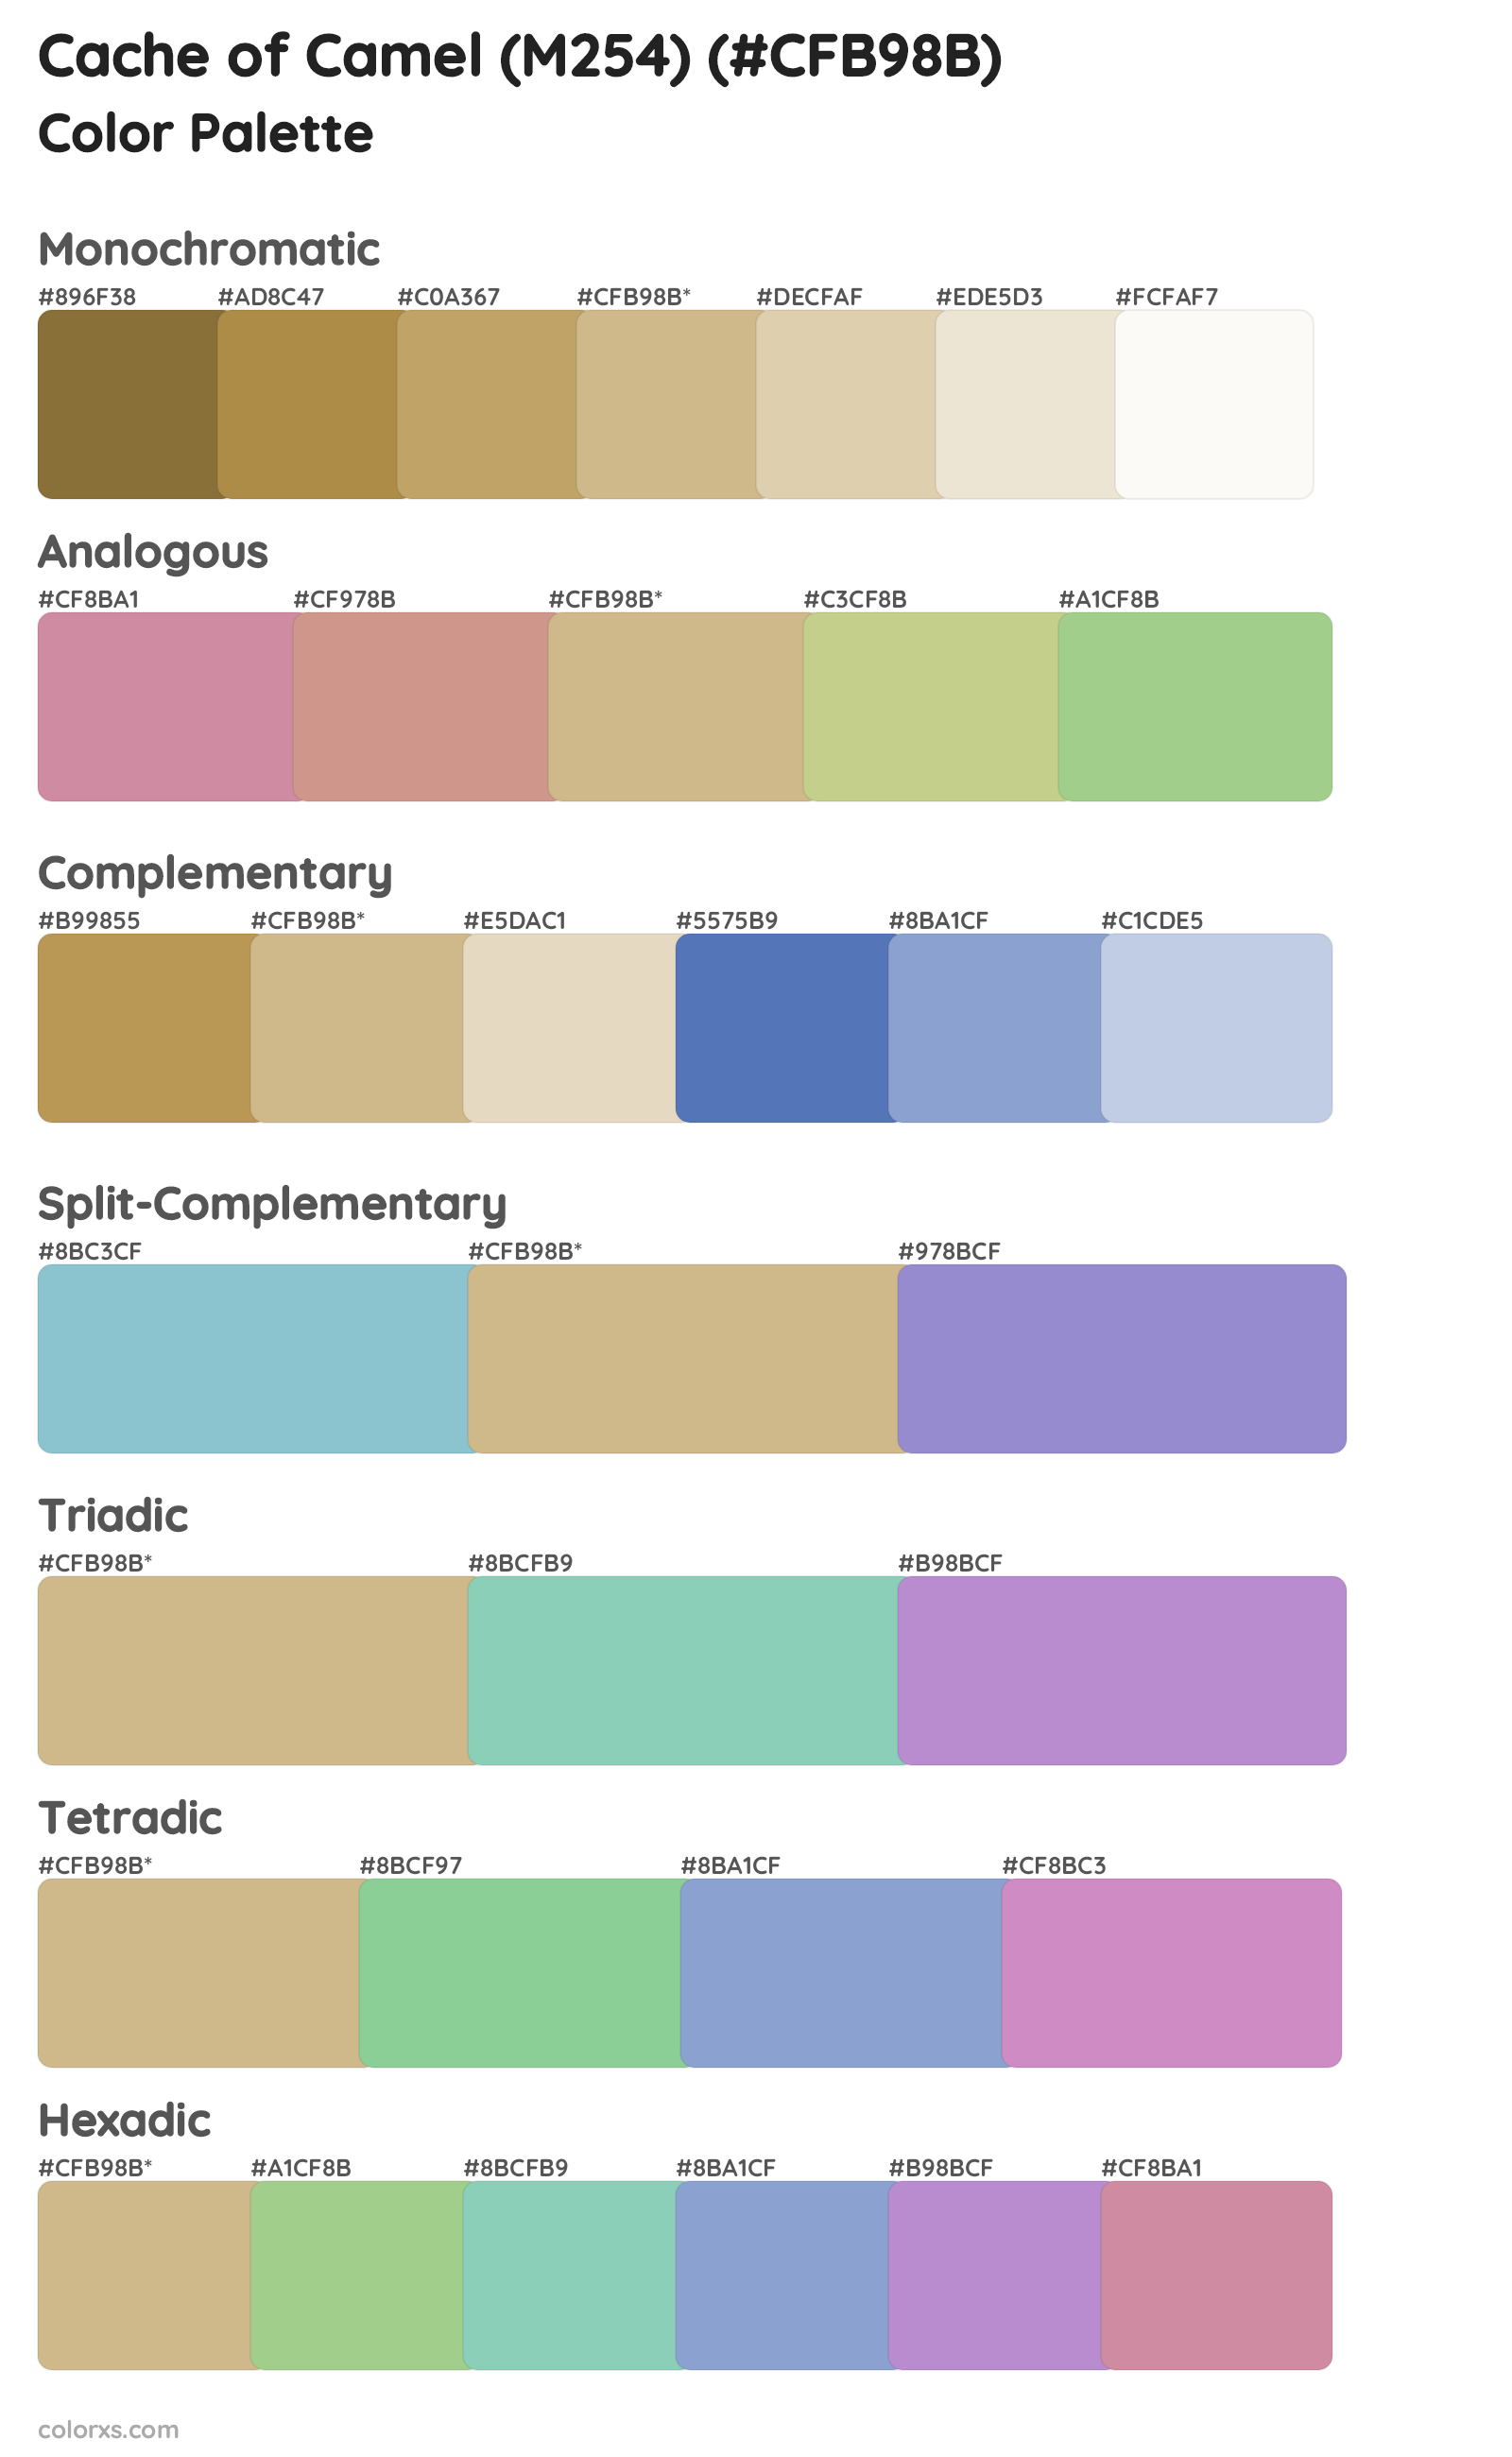 Cache of Camel (M254) Color Scheme Palettes